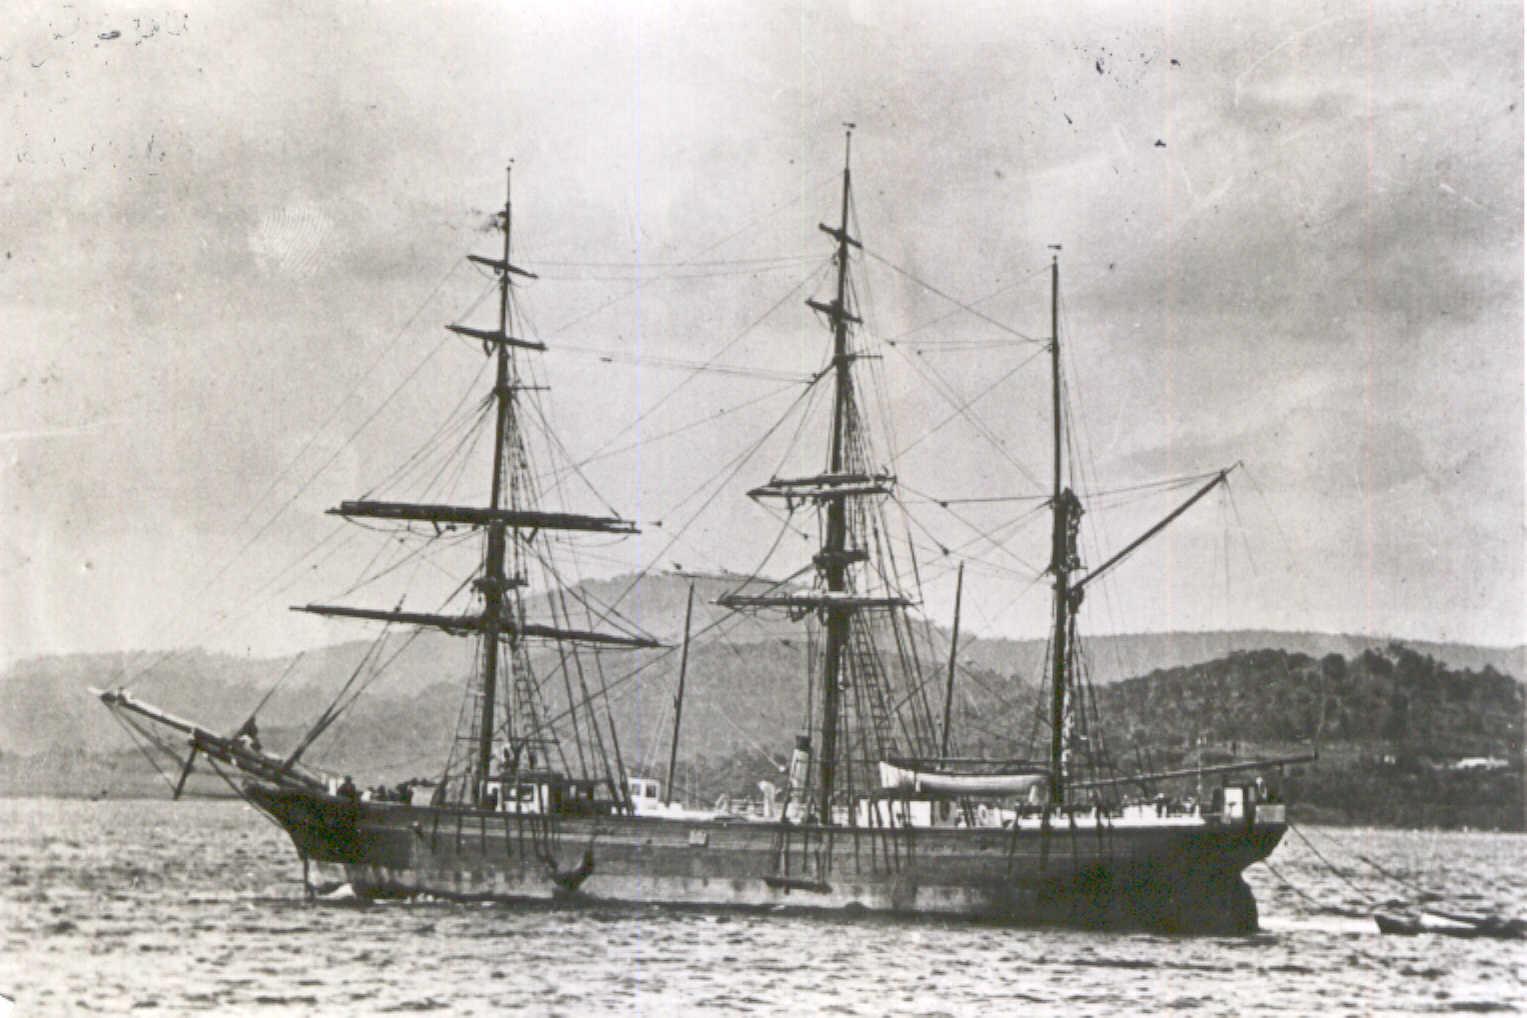 Barque at anchor